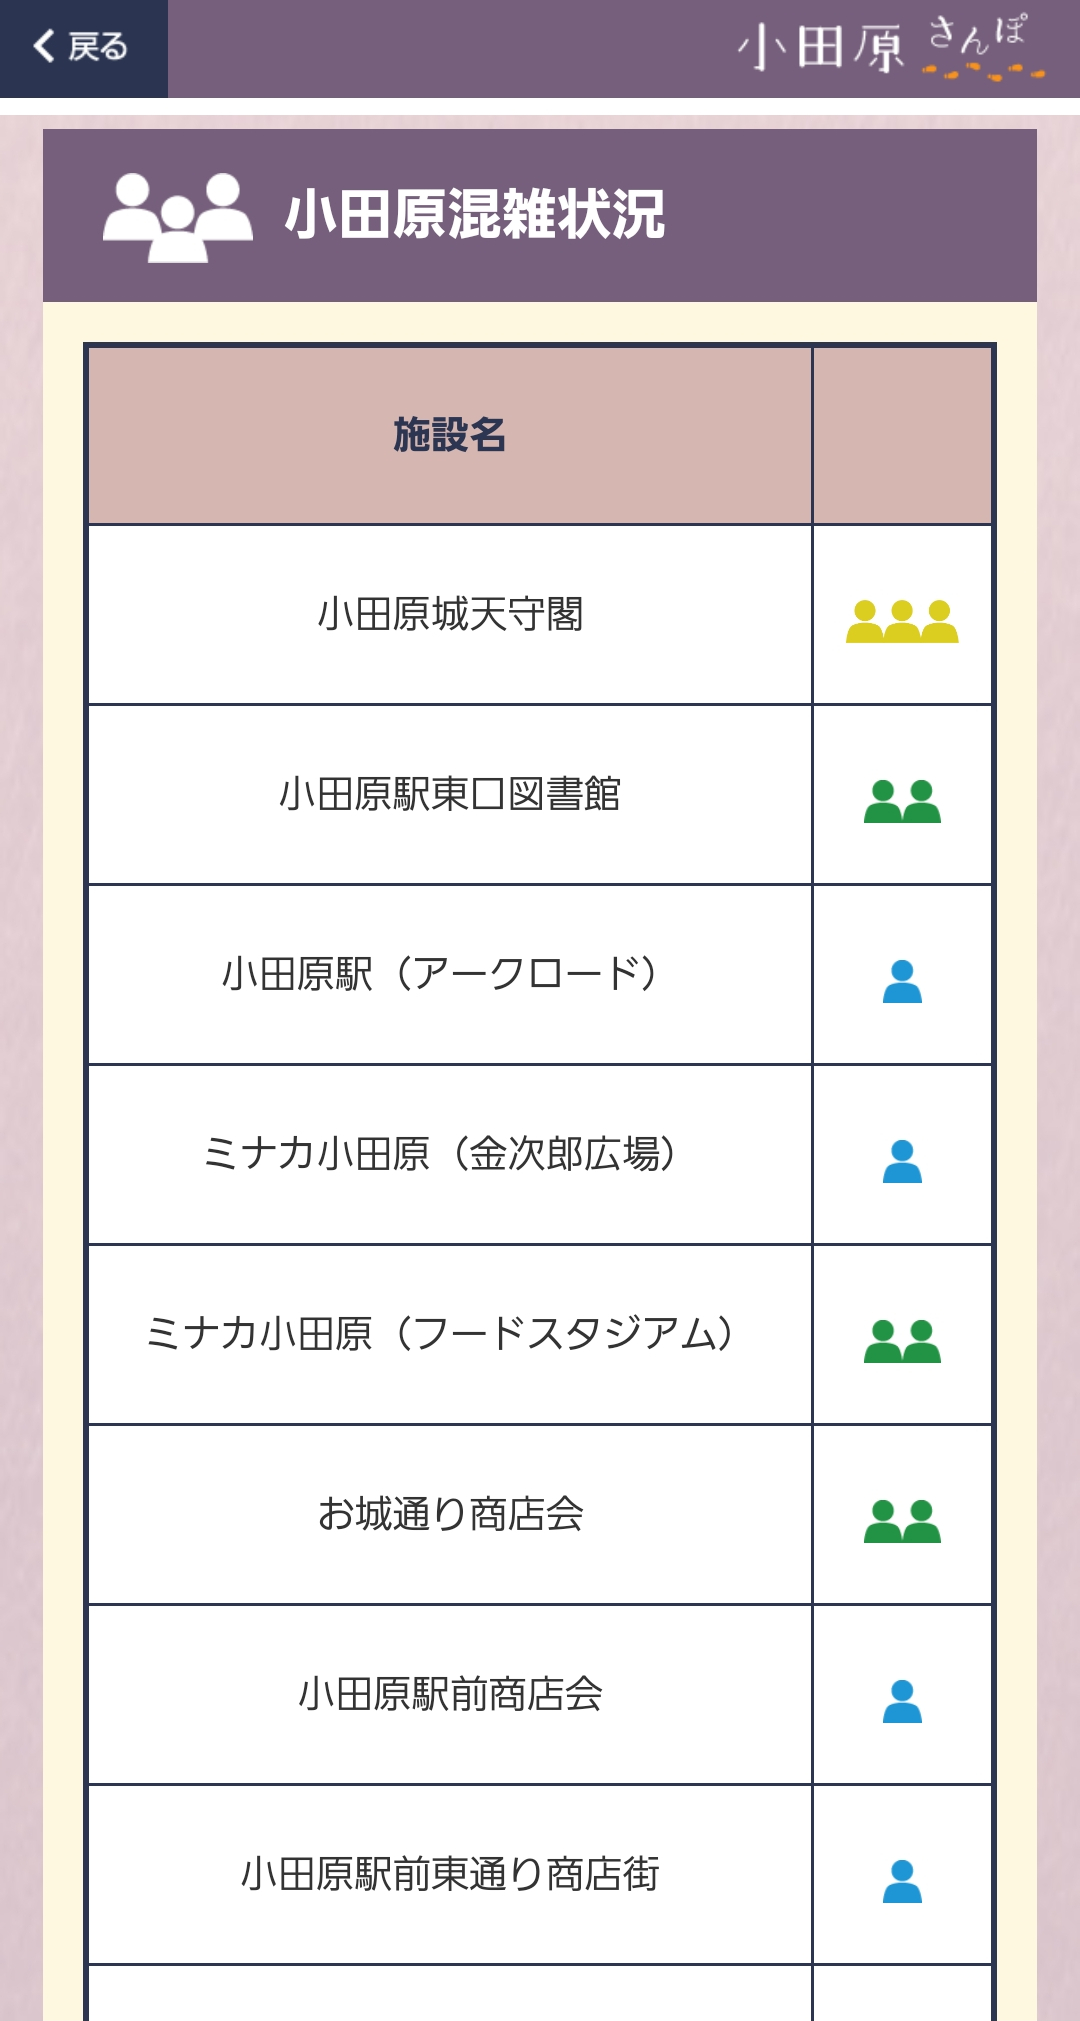 小田原混雑情報の画面